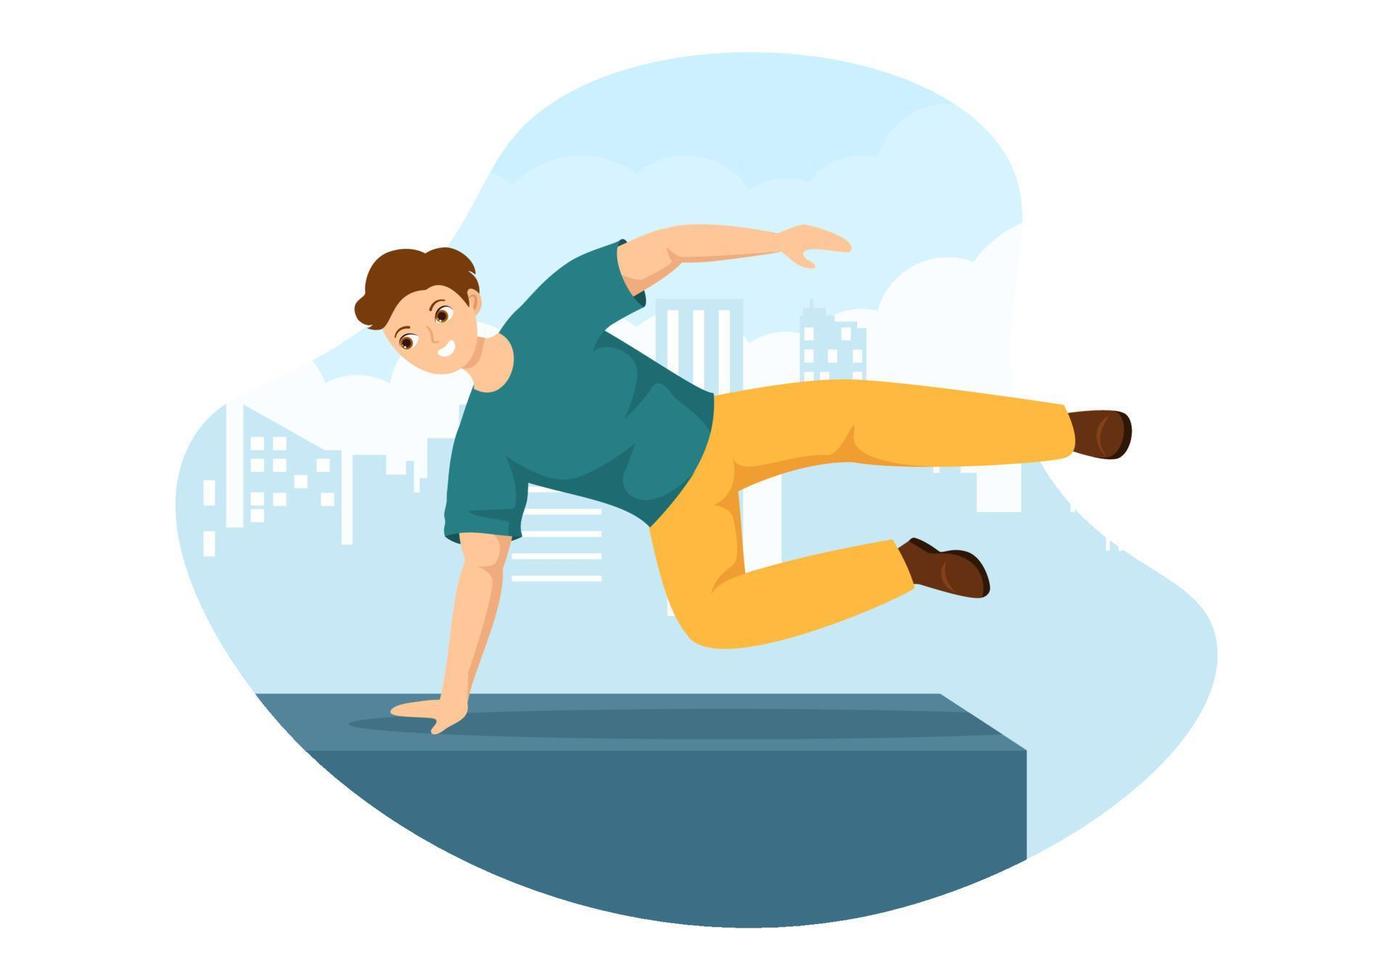 deportes de parkour con hombres jóvenes saltando sobre paredes y barreras en calles y edificios de la ciudad en ilustración de plantilla dibujada a mano de dibujos animados planos vector